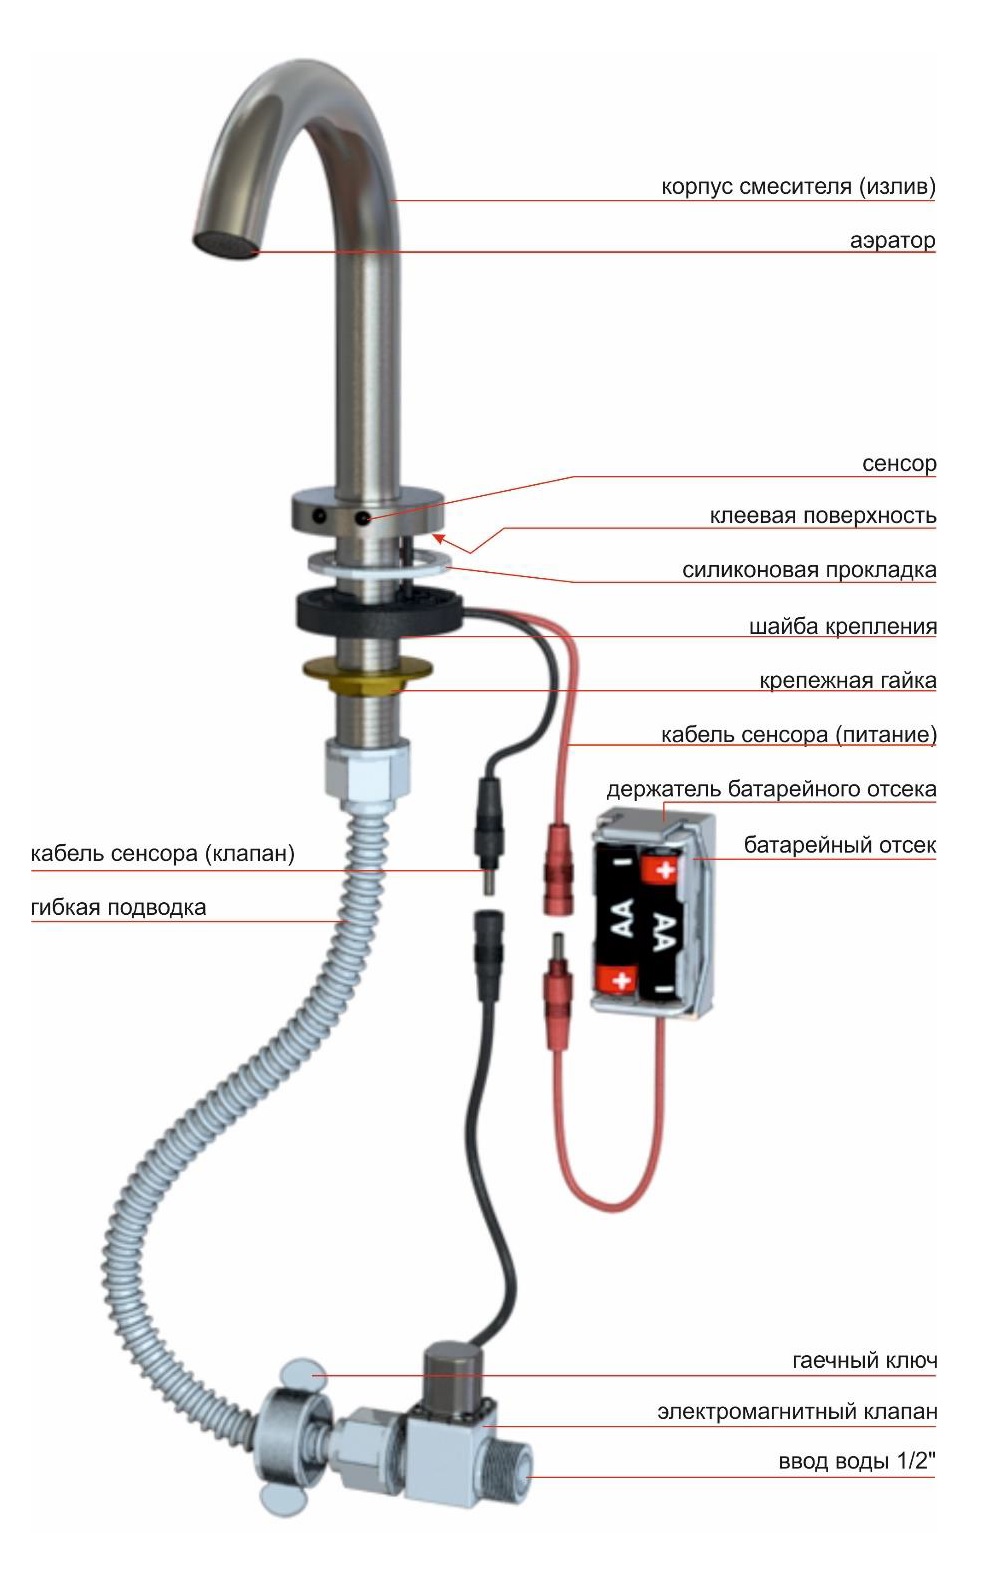 Automatic sensor faucet KR5148CV-DC